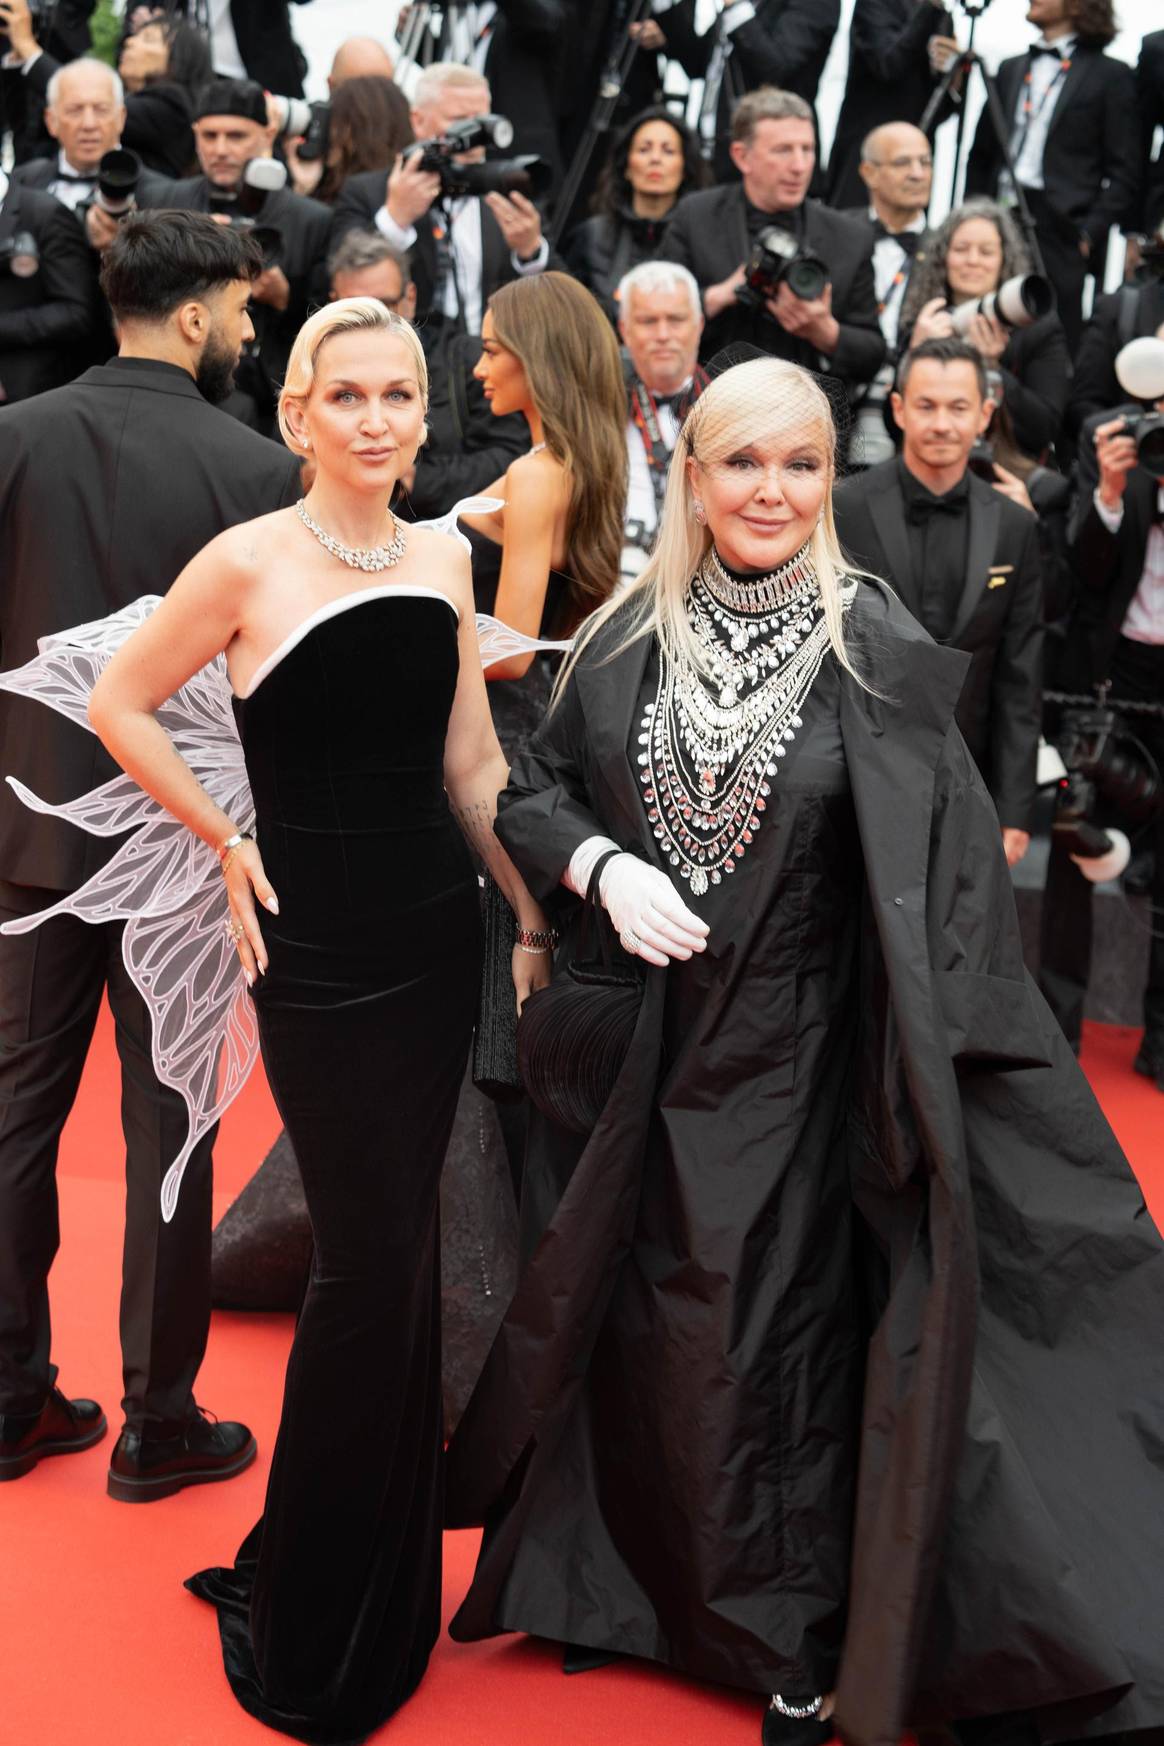 Daria Yanina and Yulia Yanina in Yanina Couture.